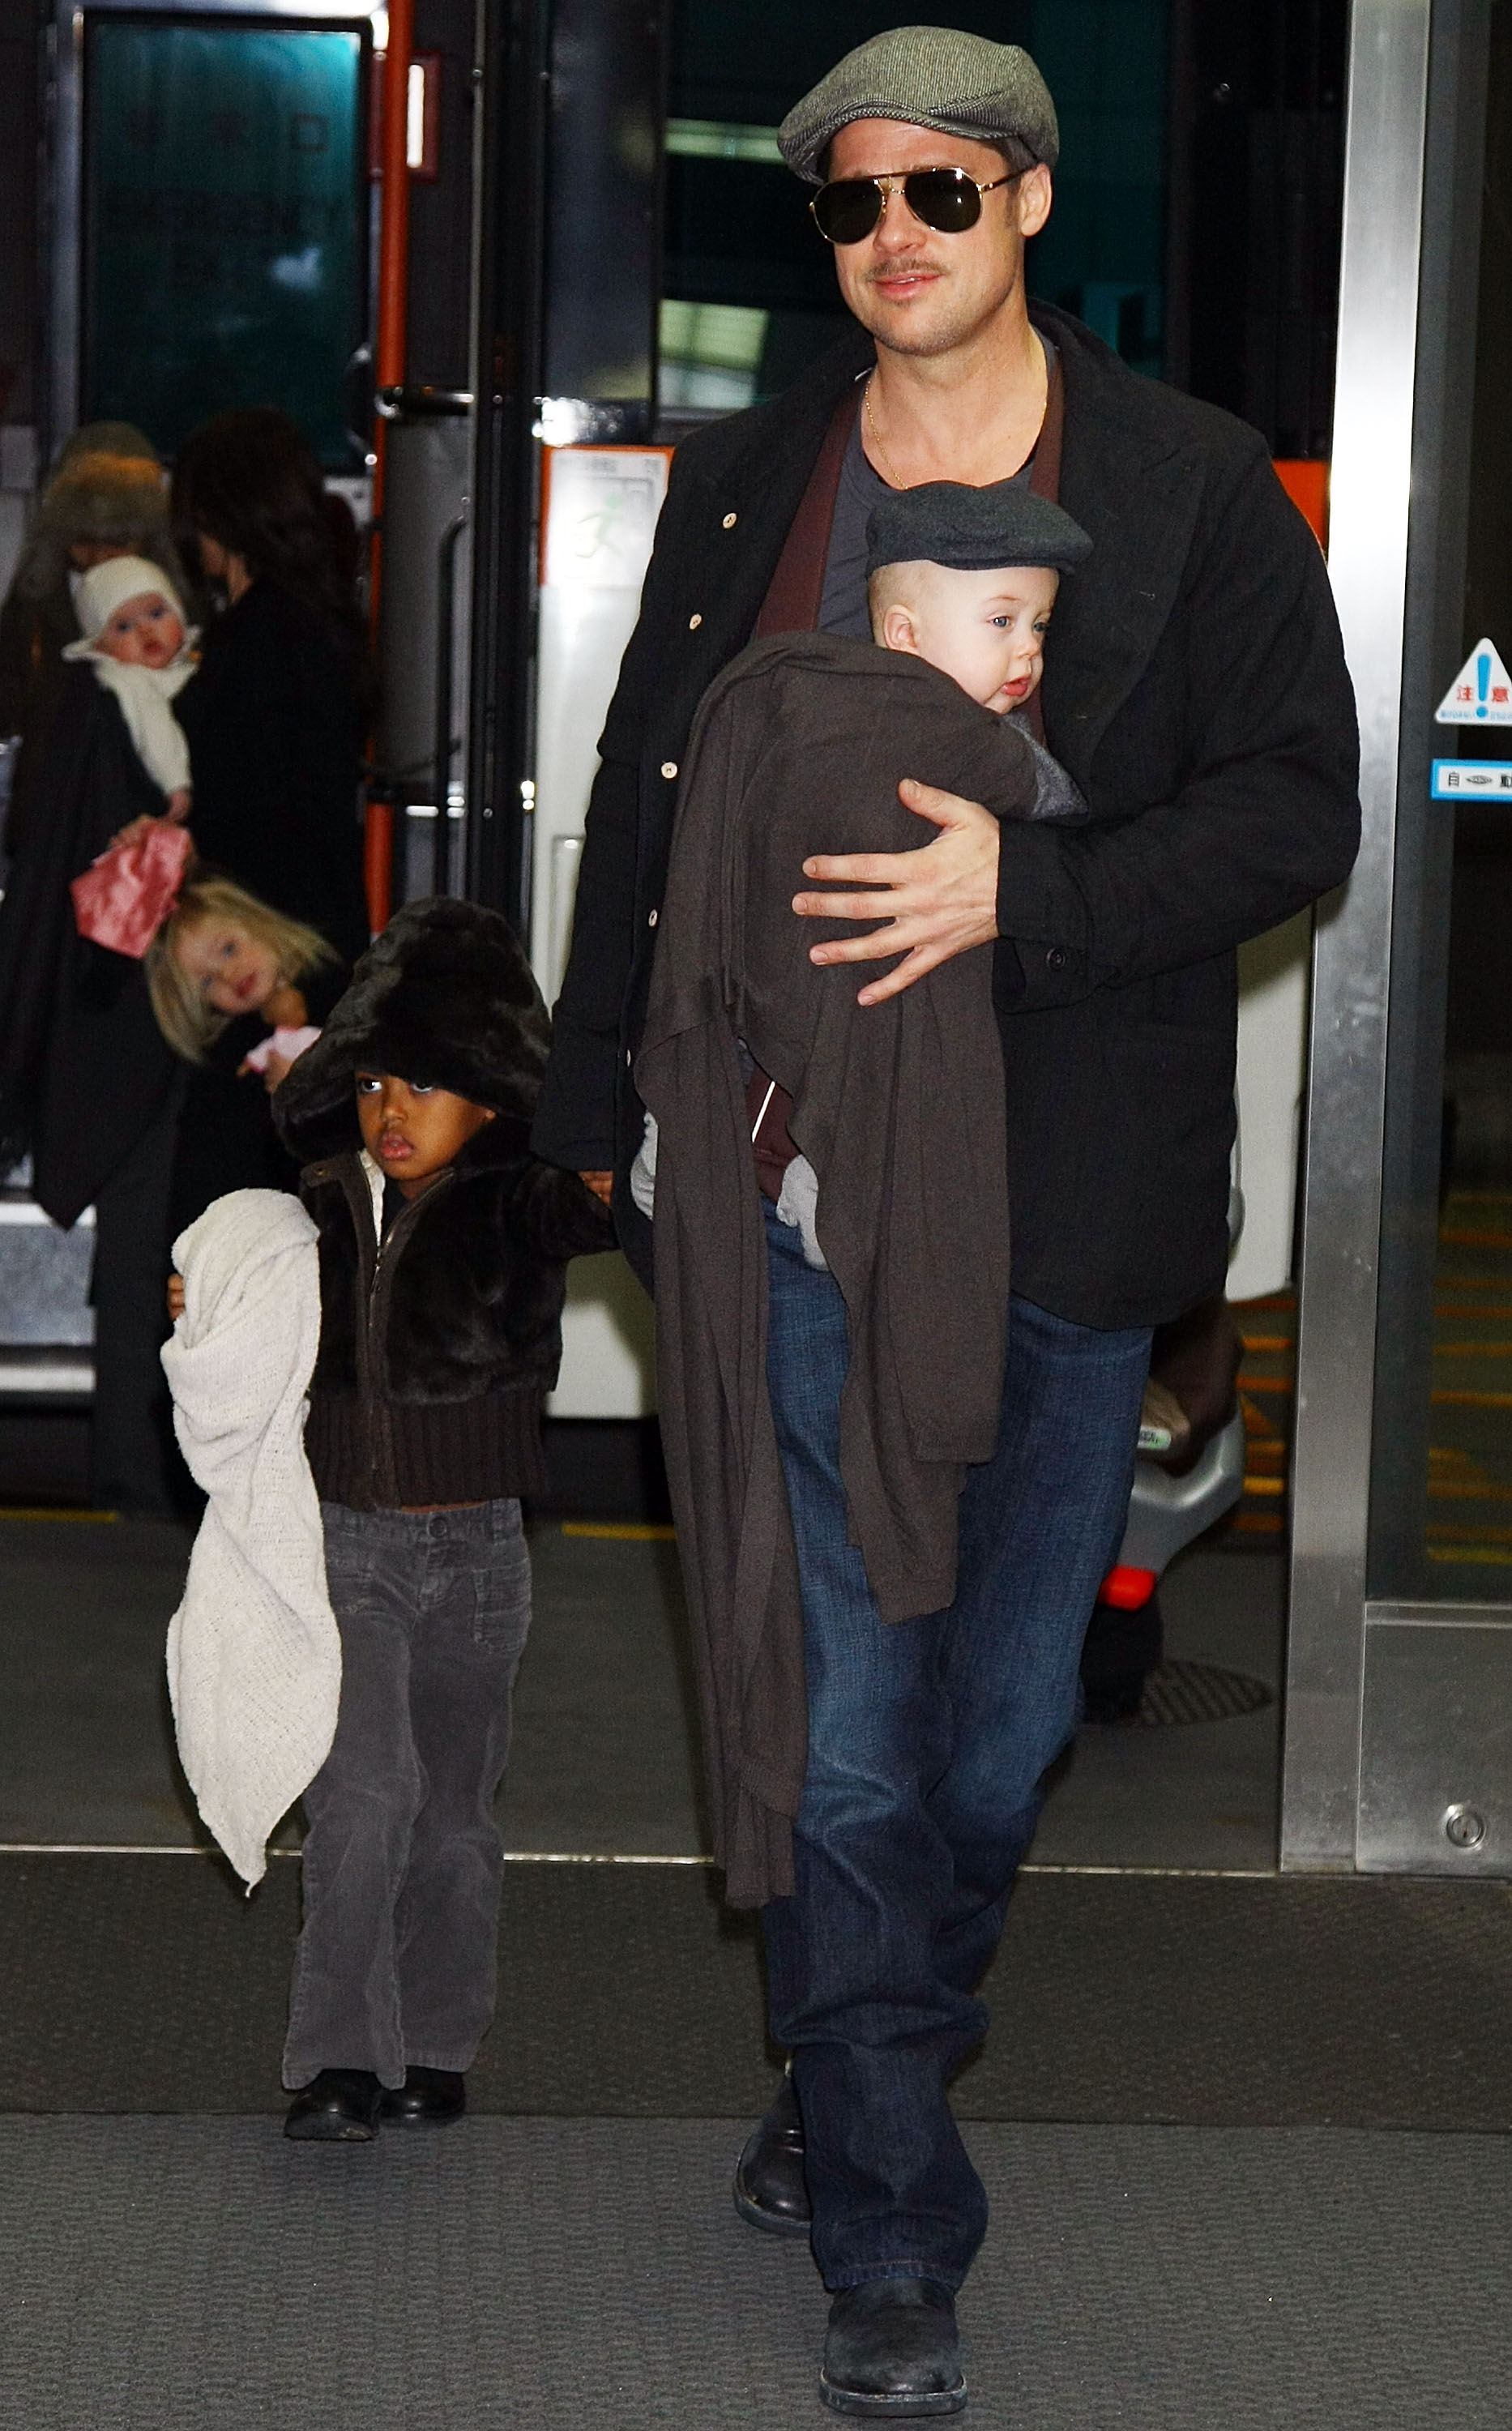 L'acteur Brad Pitt arrive à l'aéroport international de Narita avec ses enfants (de gauche à droite) Vivienne, Shiloh, Zahara et Knox le 27 janvier 2009 à Narita, Chiba, Japon | Source : Getty Images